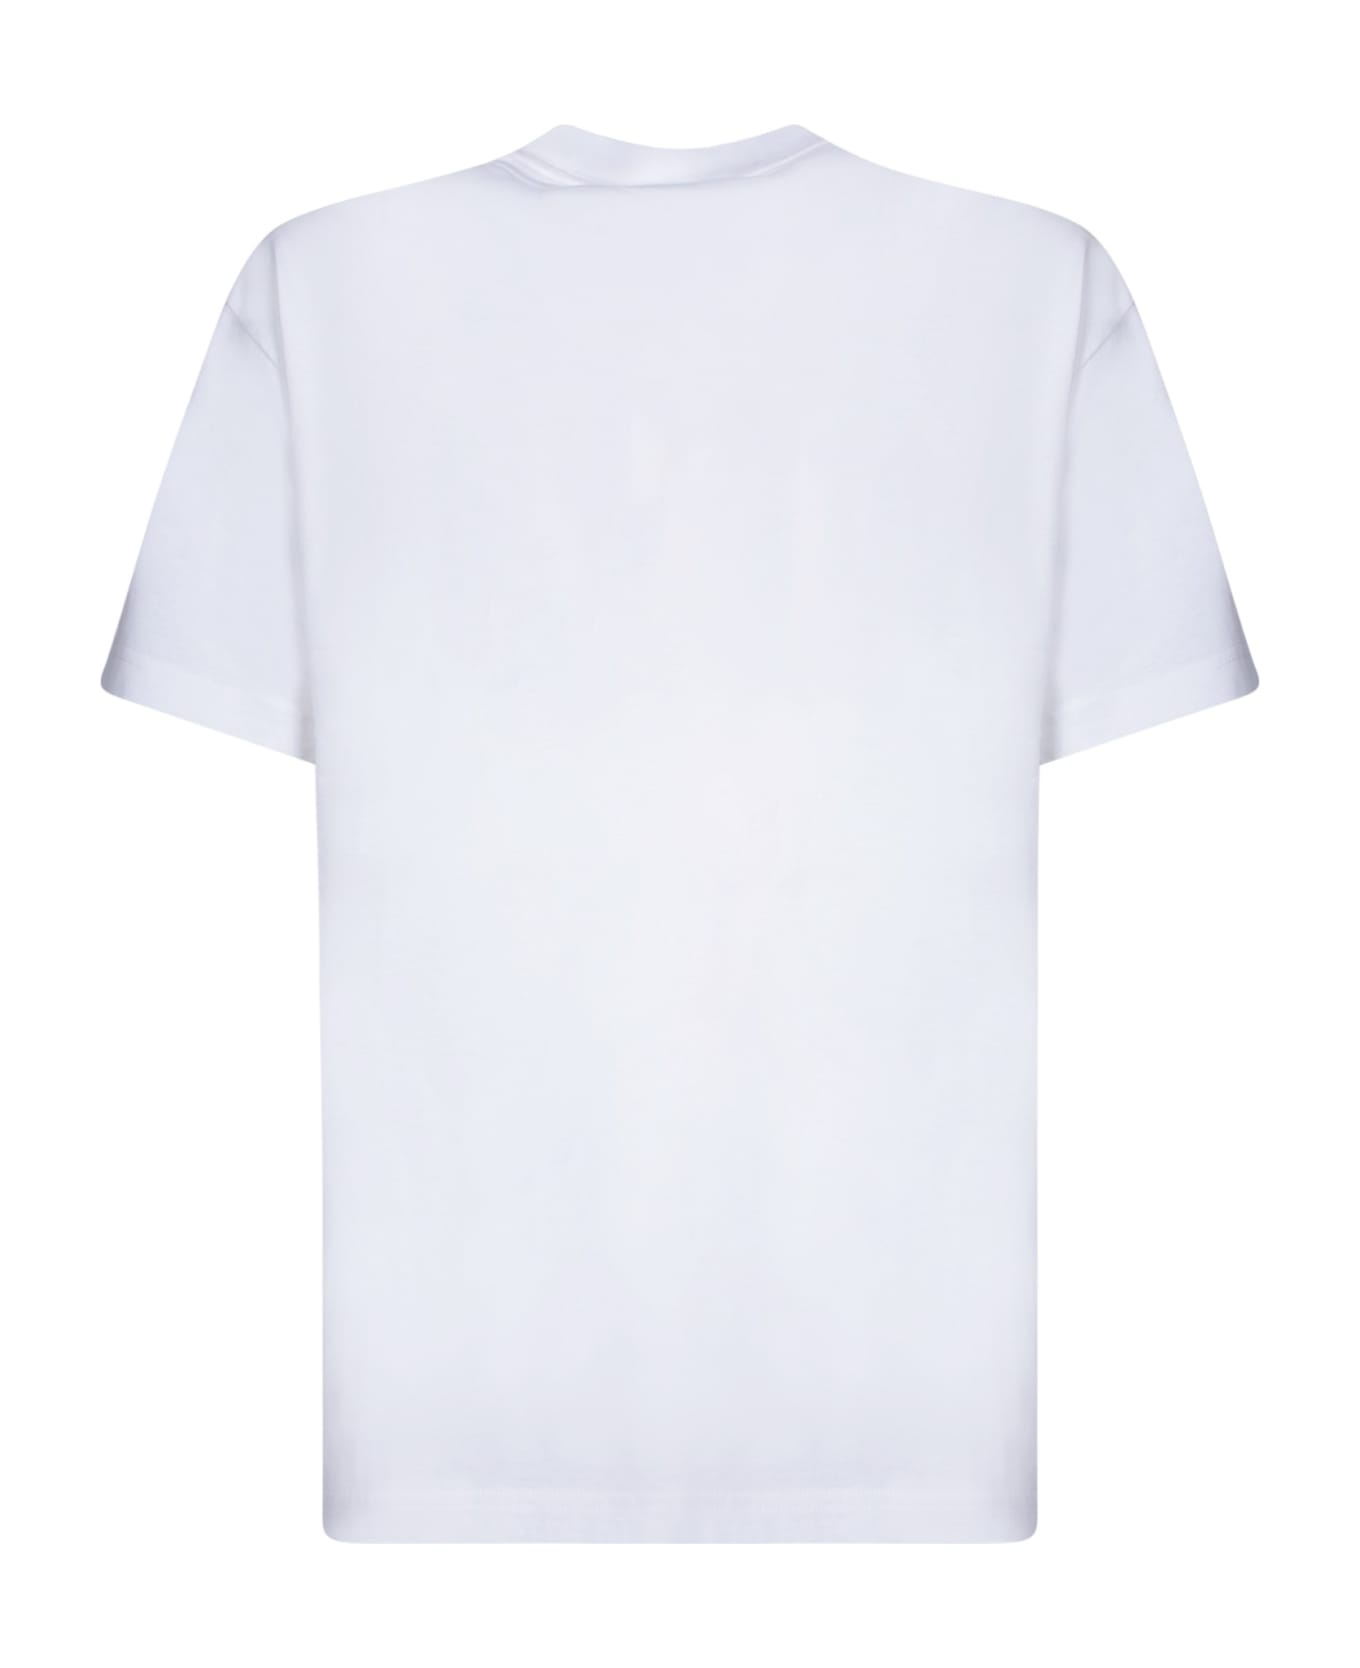 Fuct Pizza White T-shirt - White